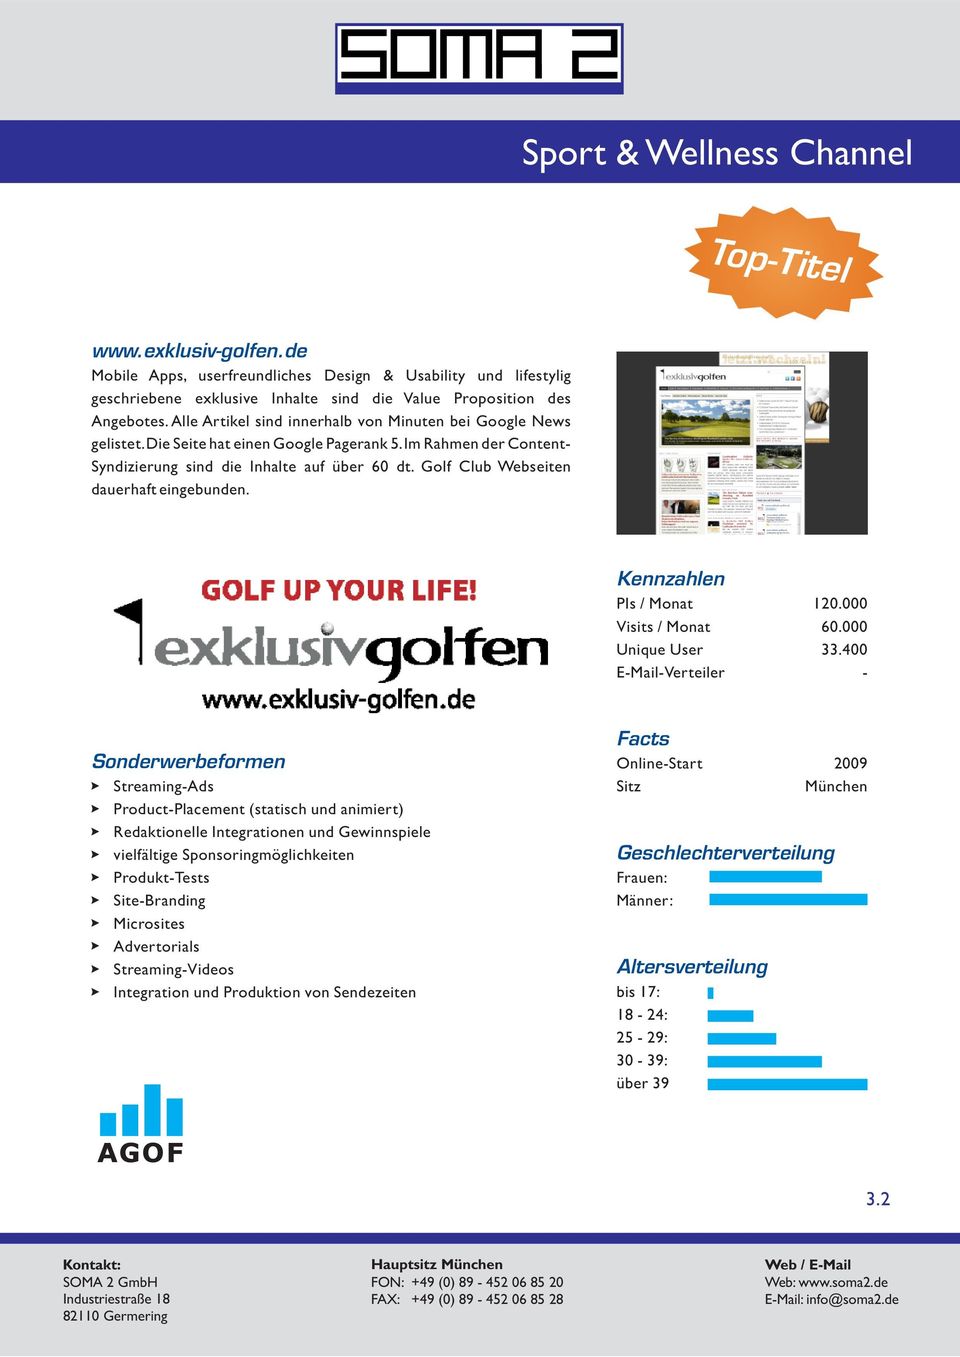 Golf Club Webseiten dauerhaft eingebunden. Kennzahlen PIs / Monat Visits / Monat Unique User EMailVerteiler 120.000 60.000 33.